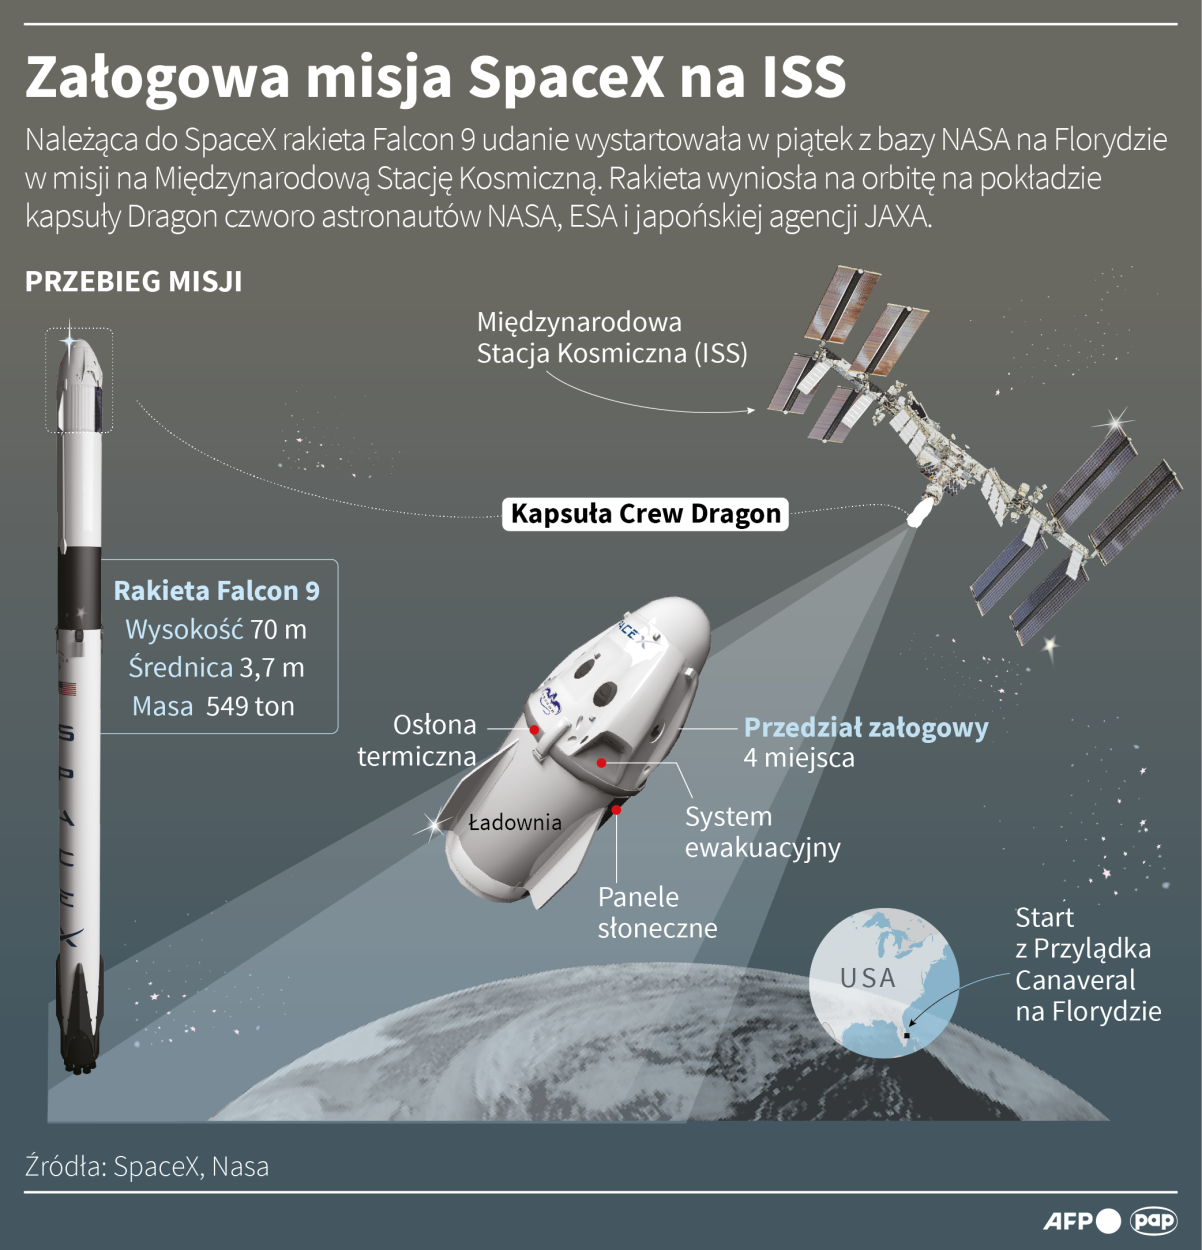 Załogowa misja SpaceX na ISS Autorzy: Adam Ziemienowicz , Maciej Zieliński